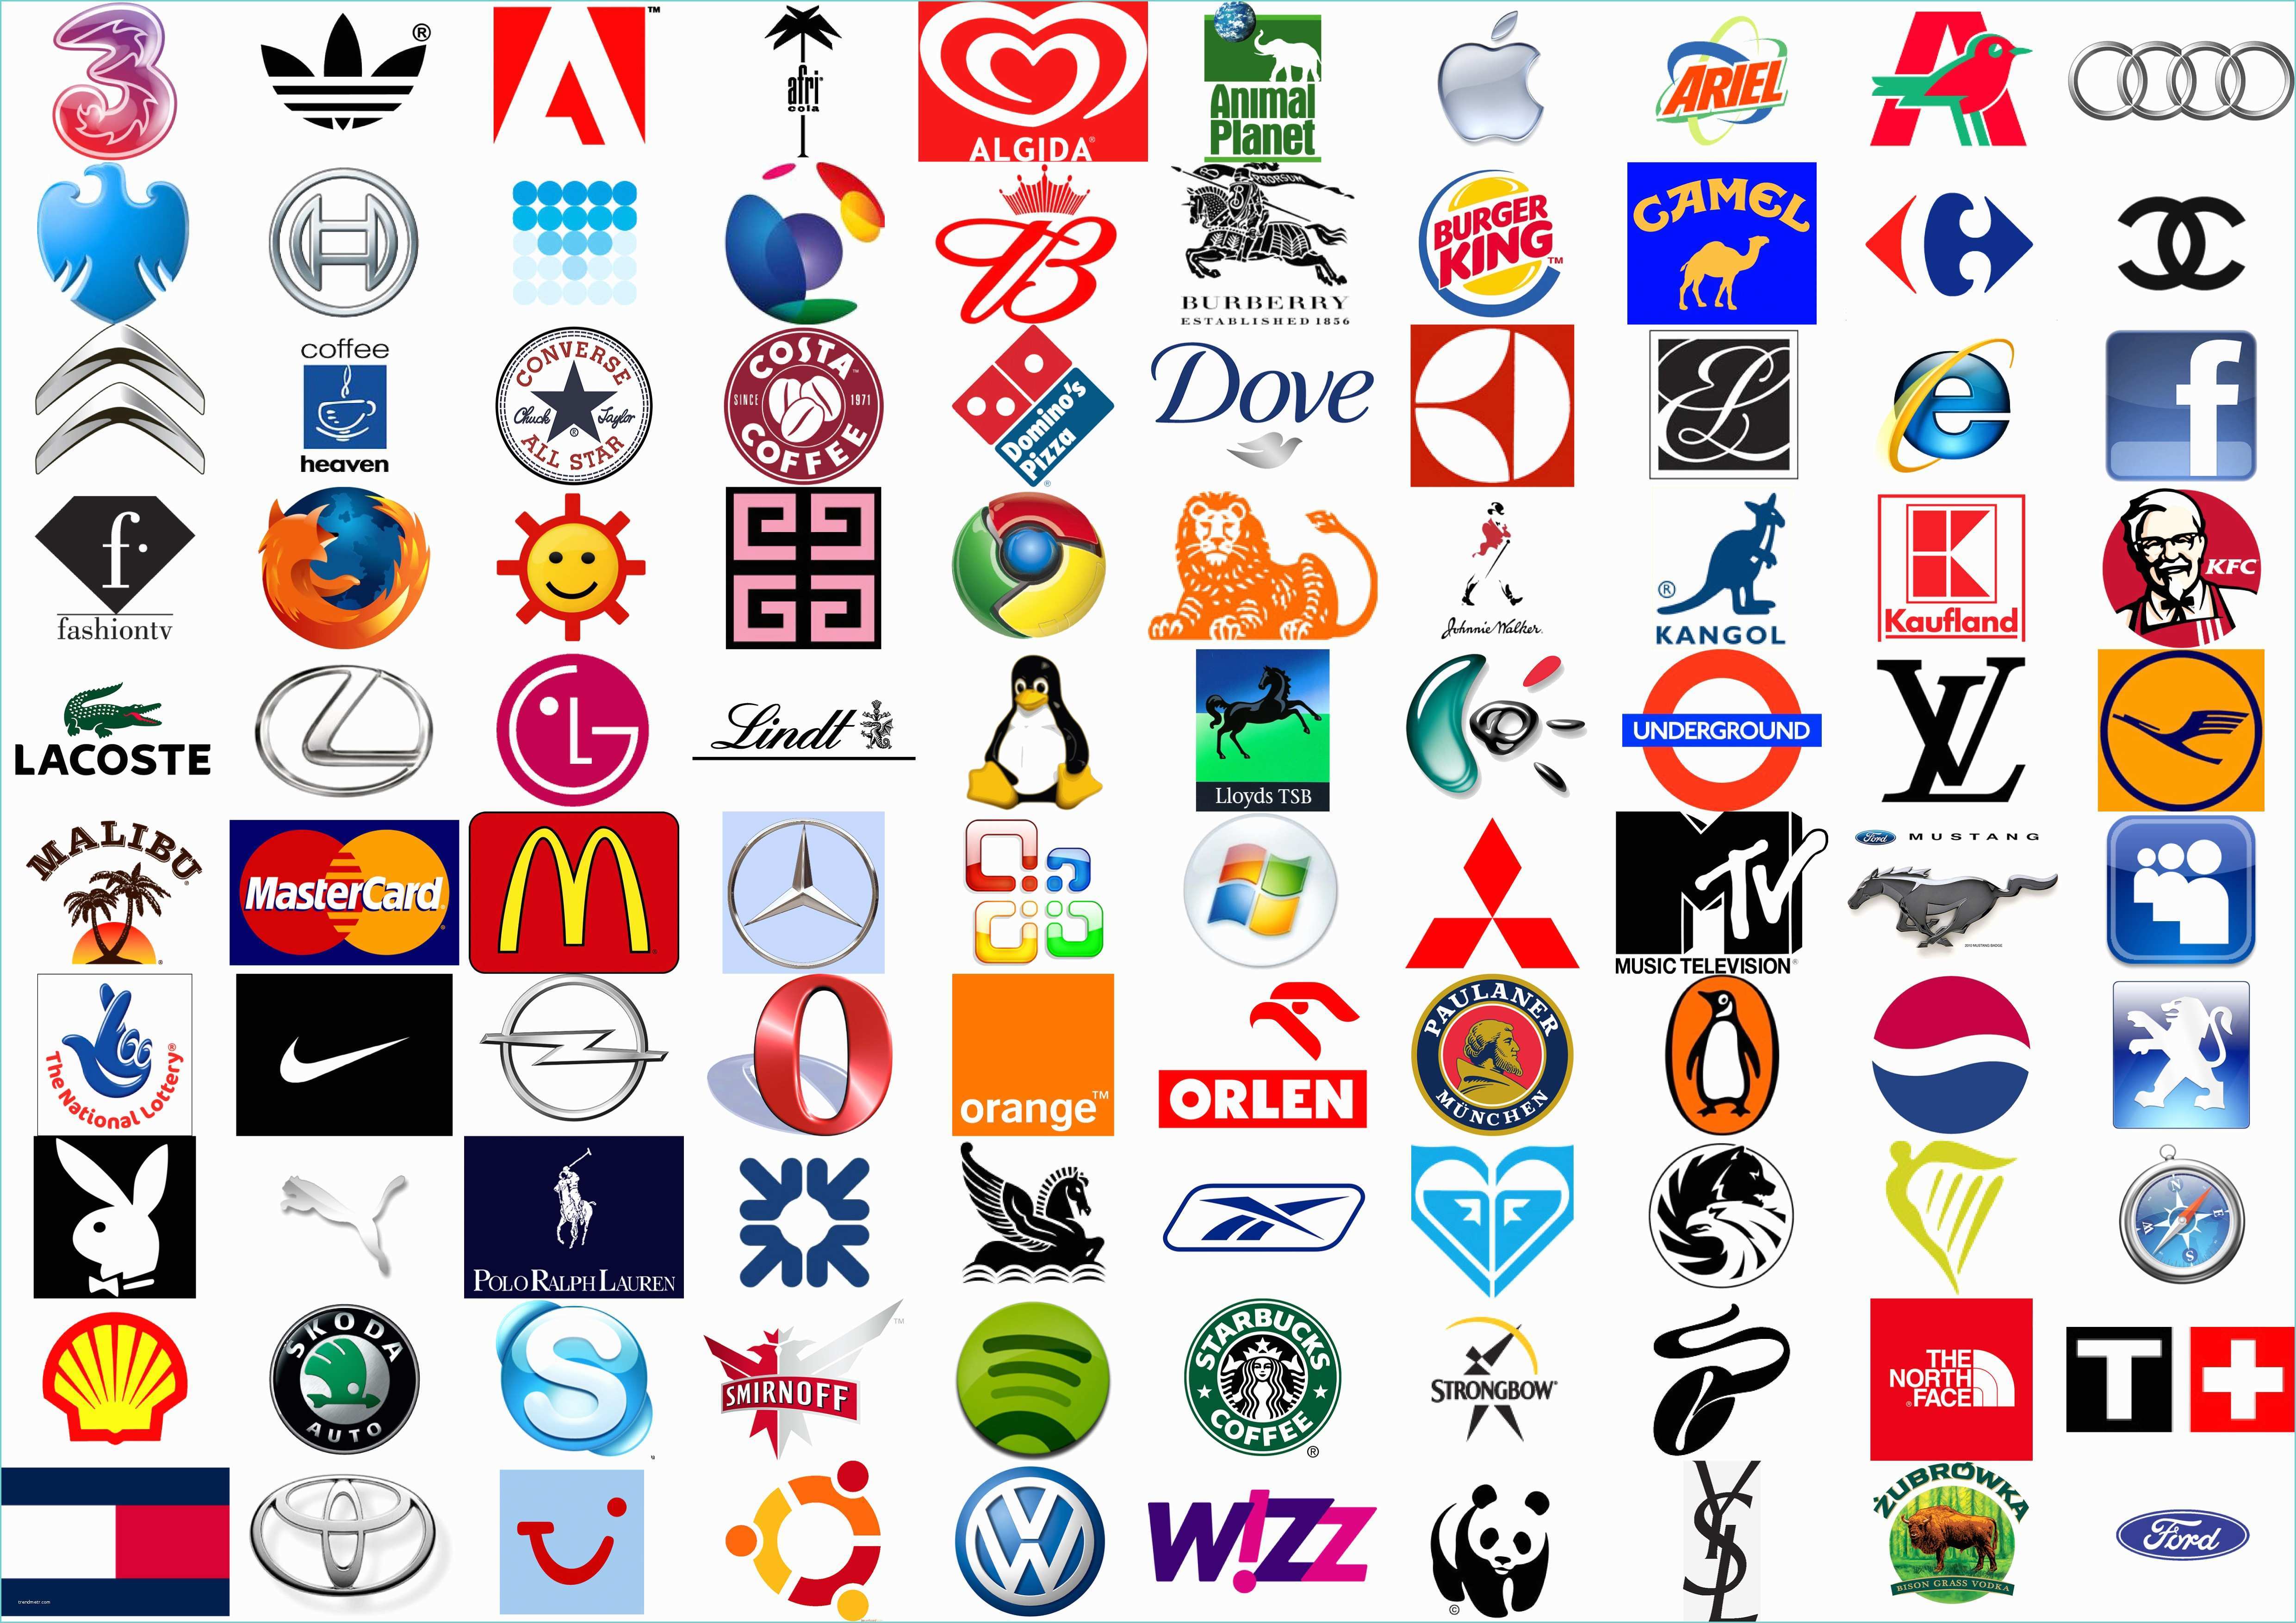 Logo B Rouge Avec Couronne Logo 20 Les Logos Des sociétés Connues